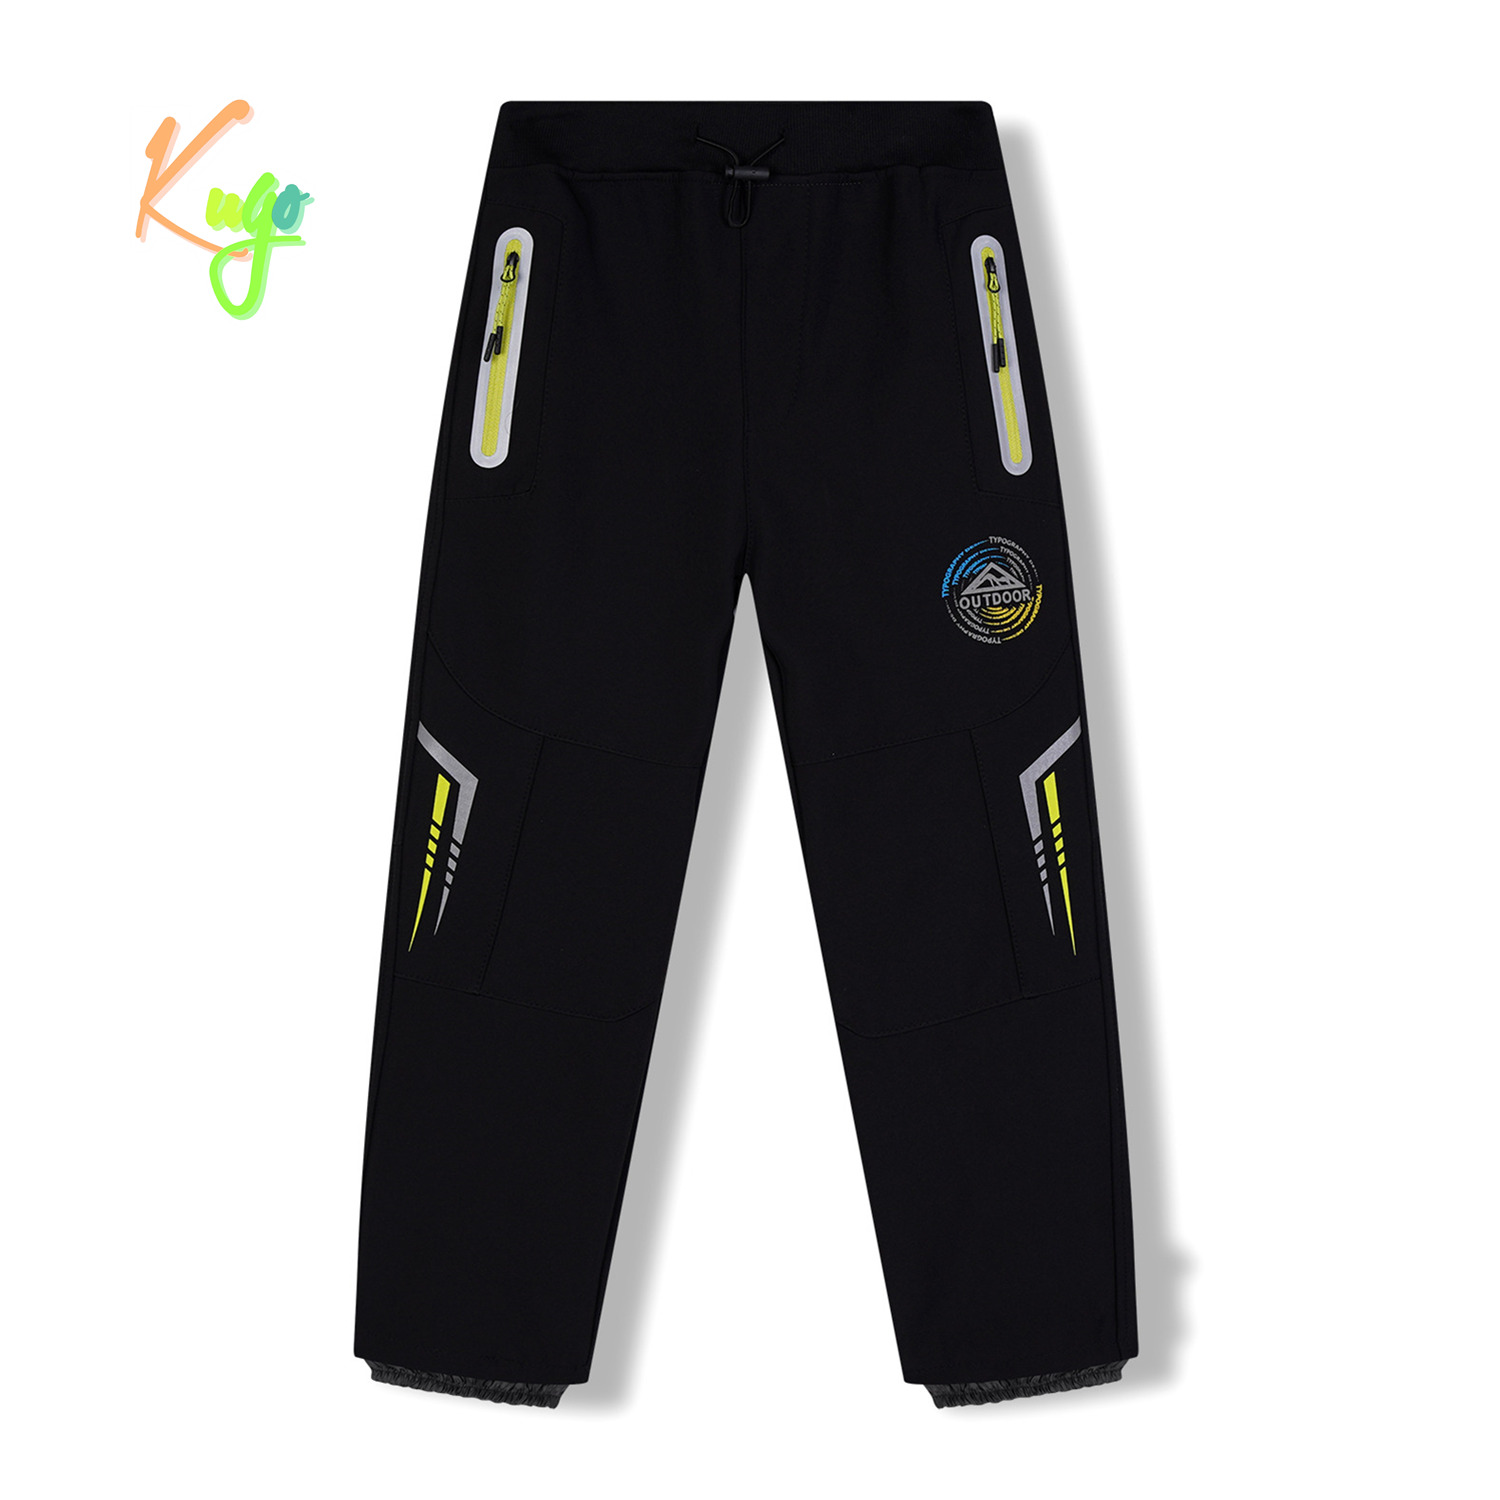 Chlapecké softshellové kalhoty, zateplené - KUGO HK5621, černá / signální zipy Barva: Černá, Velikost: 122